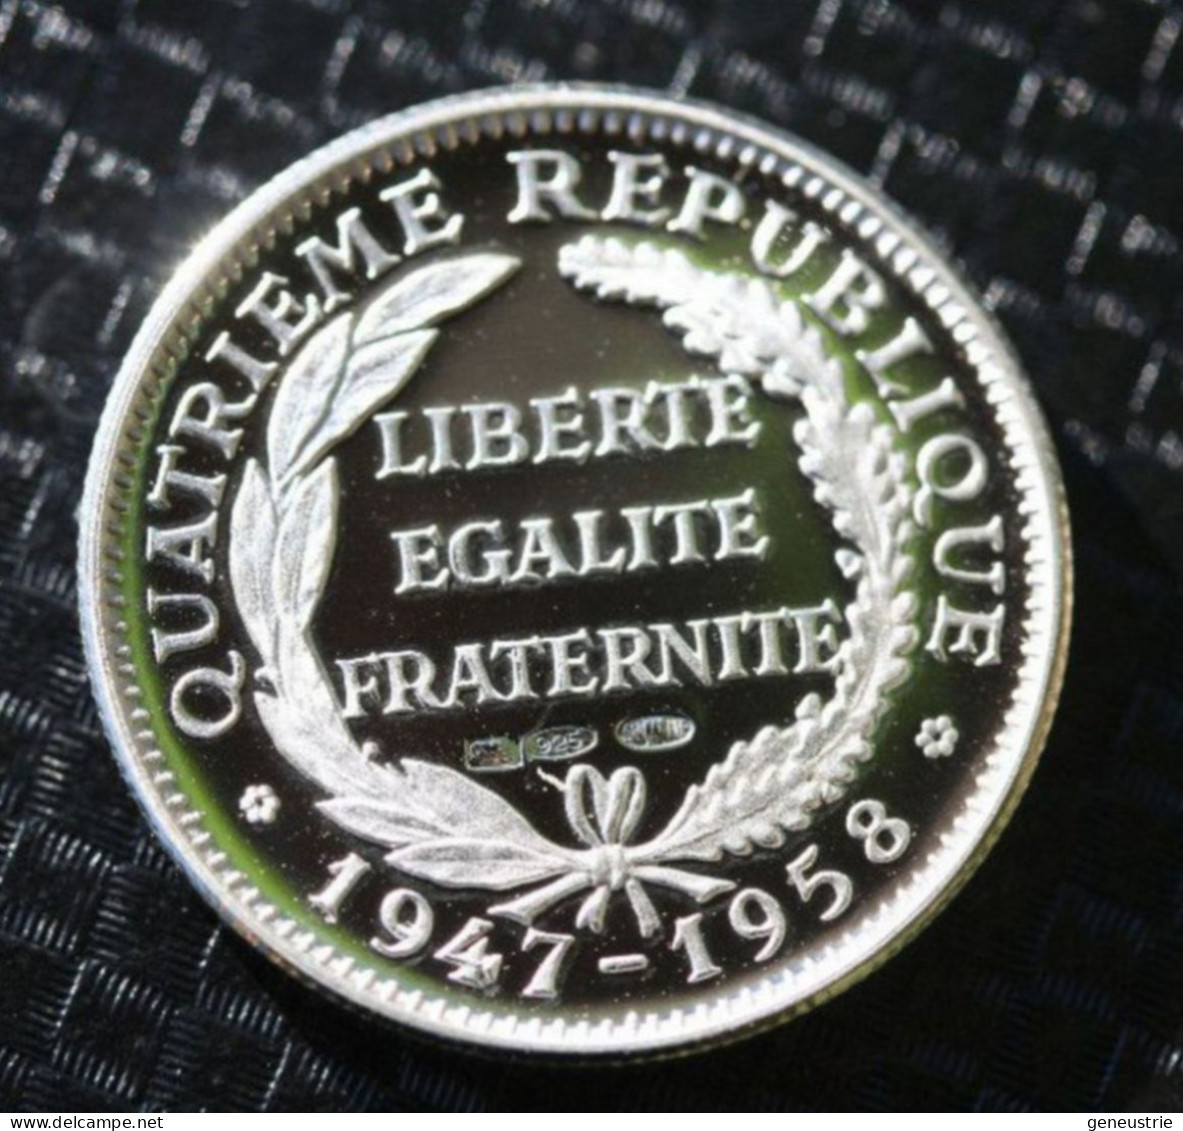 Beau Jeton Argent Poinçonnée 925 - 21mm "Président De La République Vincent Auriol" French President Token - Elongated Coins